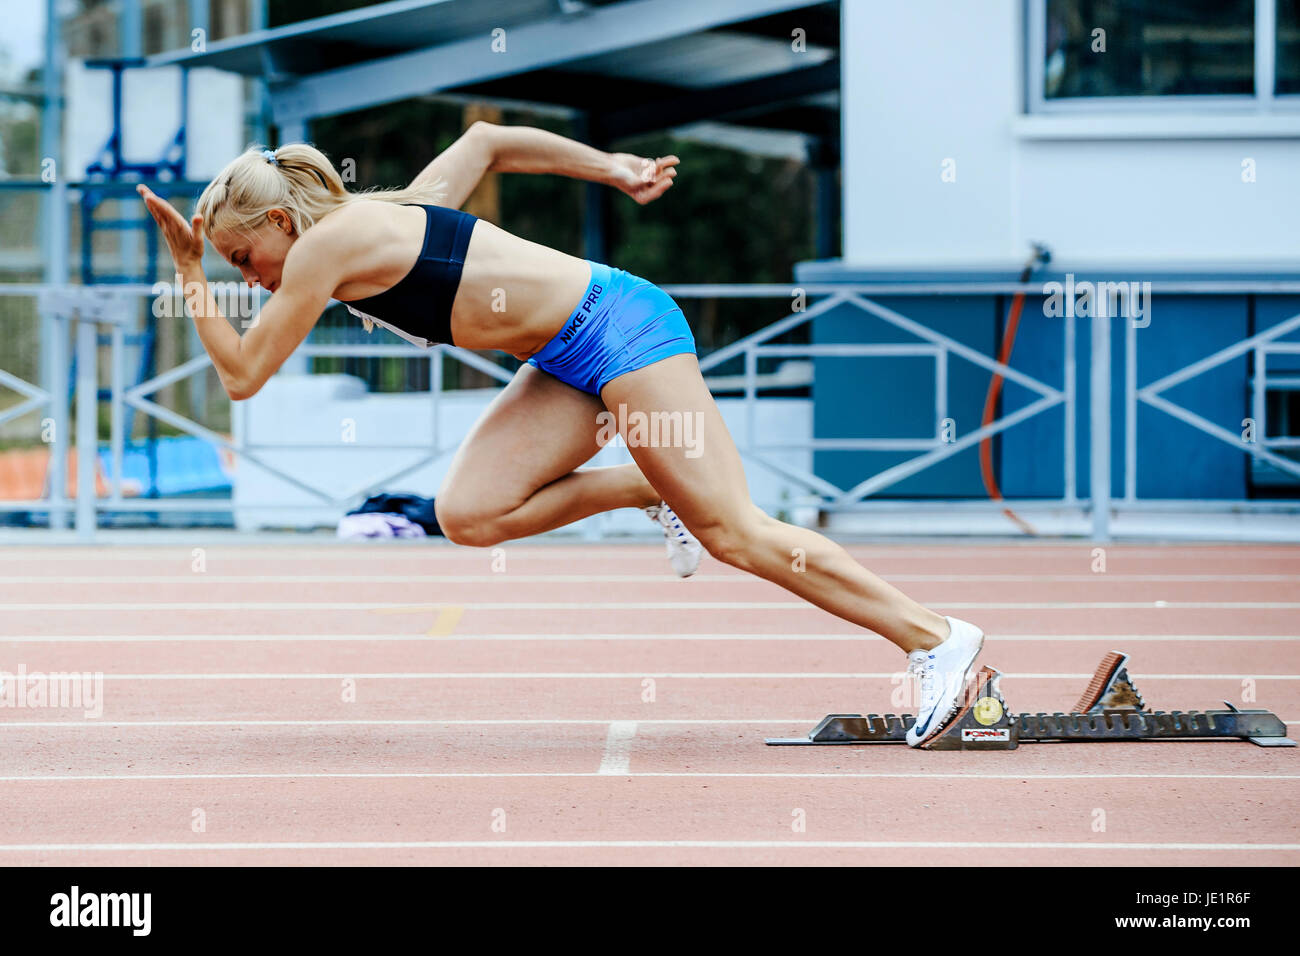 Avvio esplosivo atleta femminile sprinter eseguire 200 metri durante il campionato UrFO in atletica leggera Foto Stock